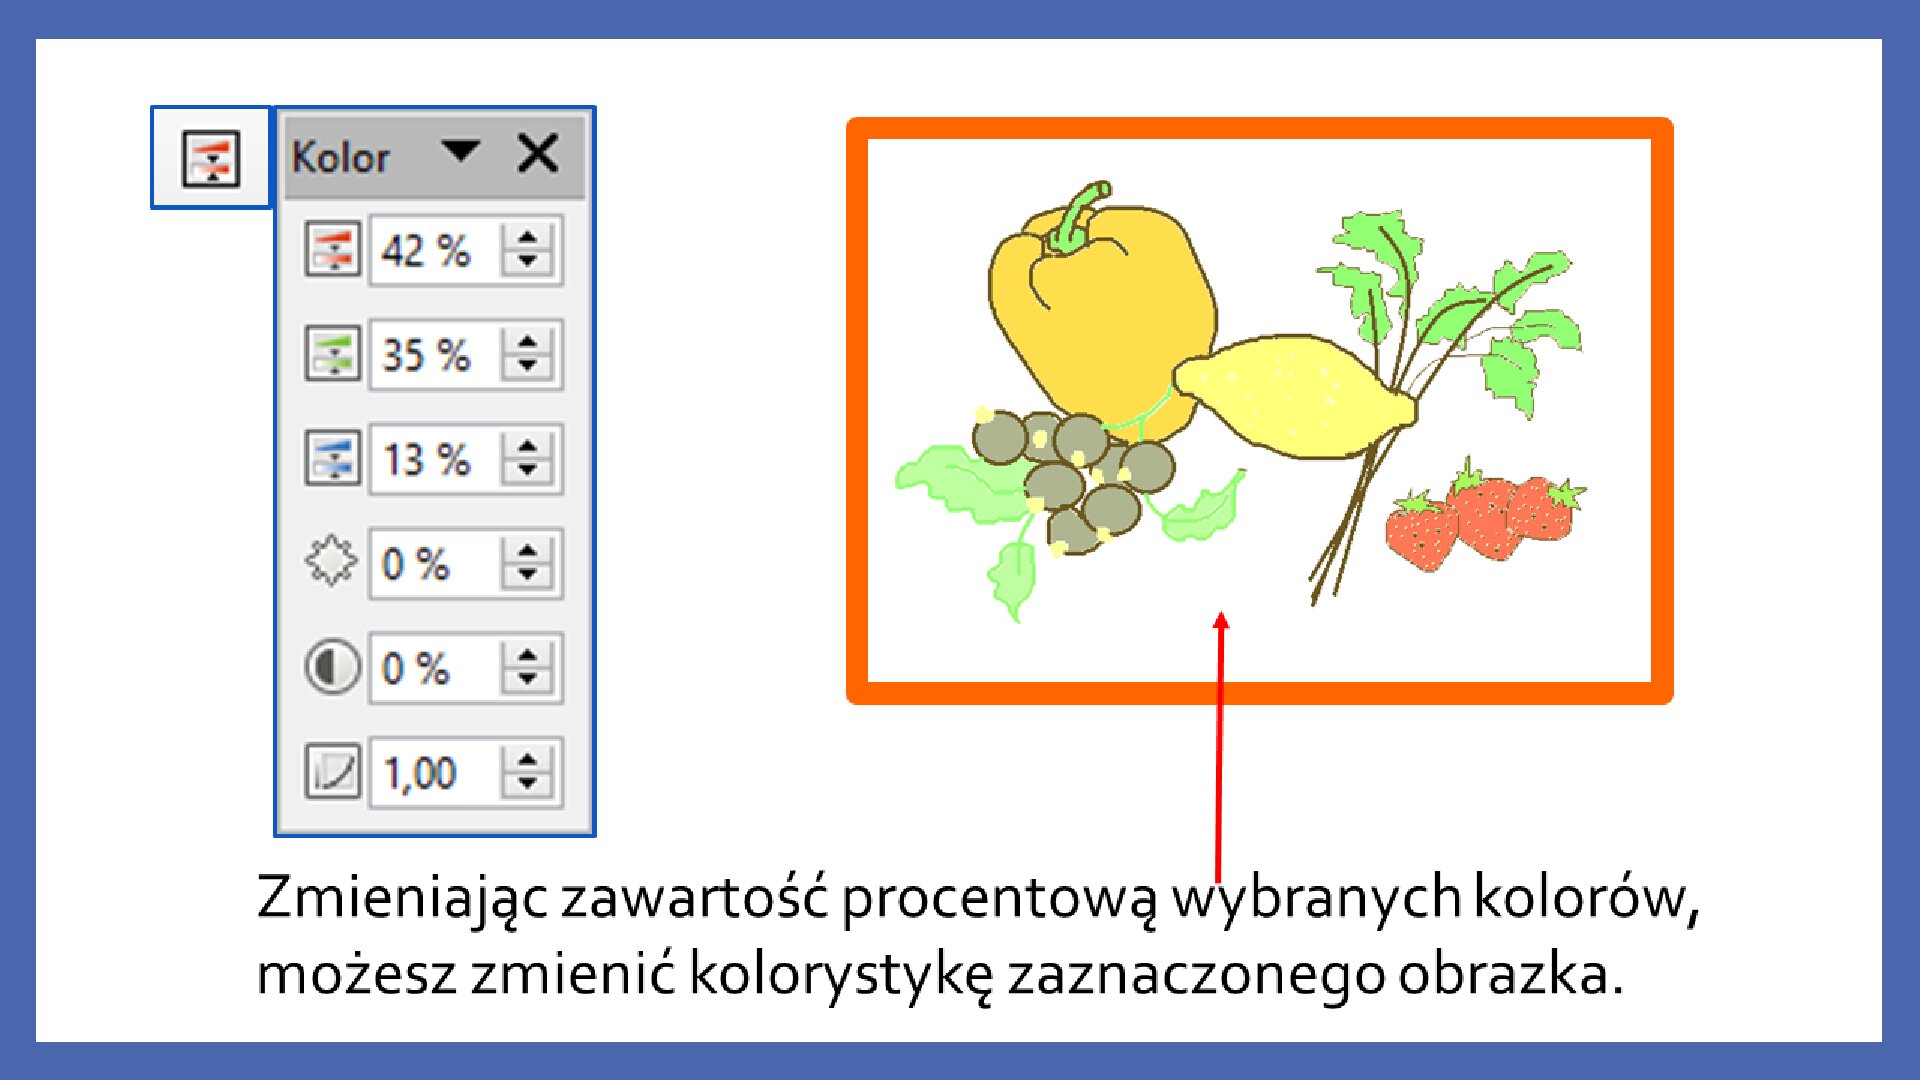 Slajd 6 galerii zrzutów slajdów: Modyfikacja obiektów w programie LibreOffice Impress